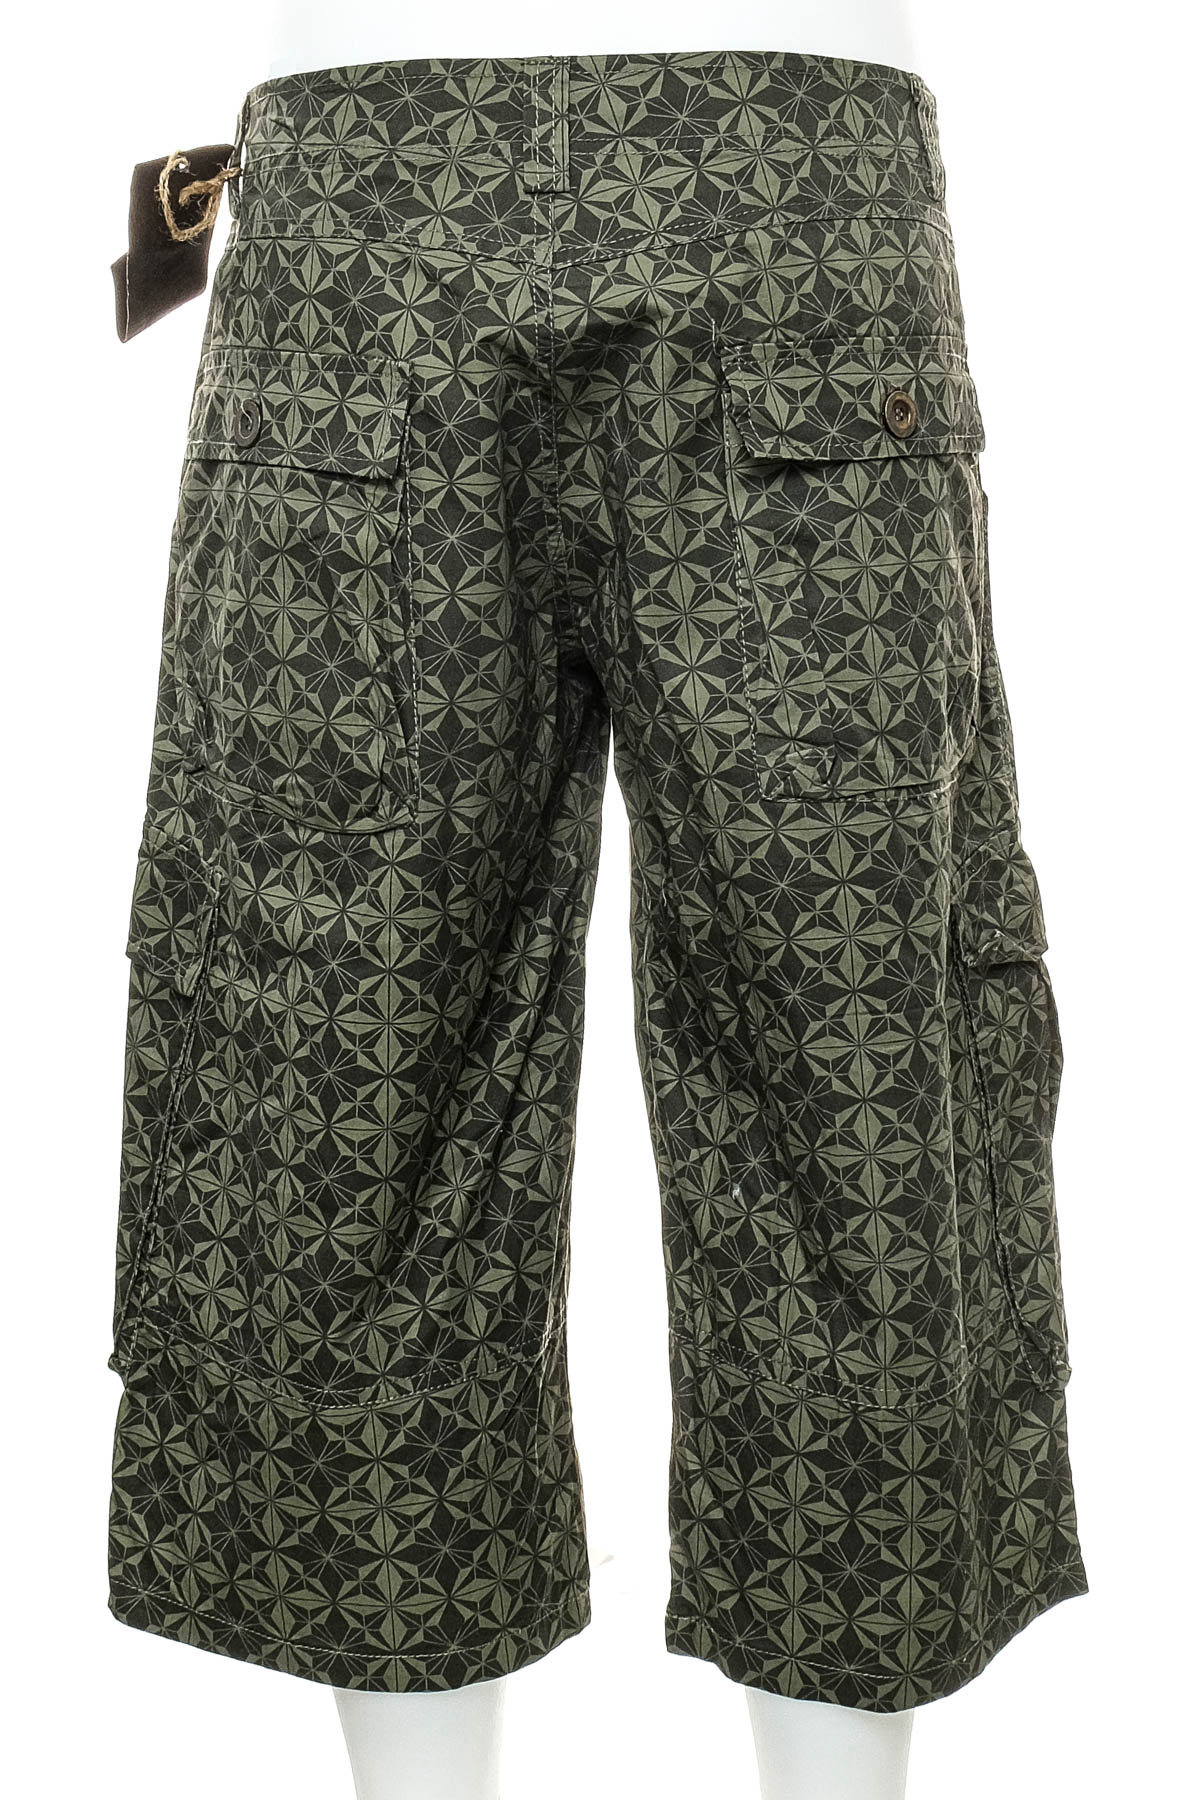 Pantalon pentru bărbați - Apex - 1